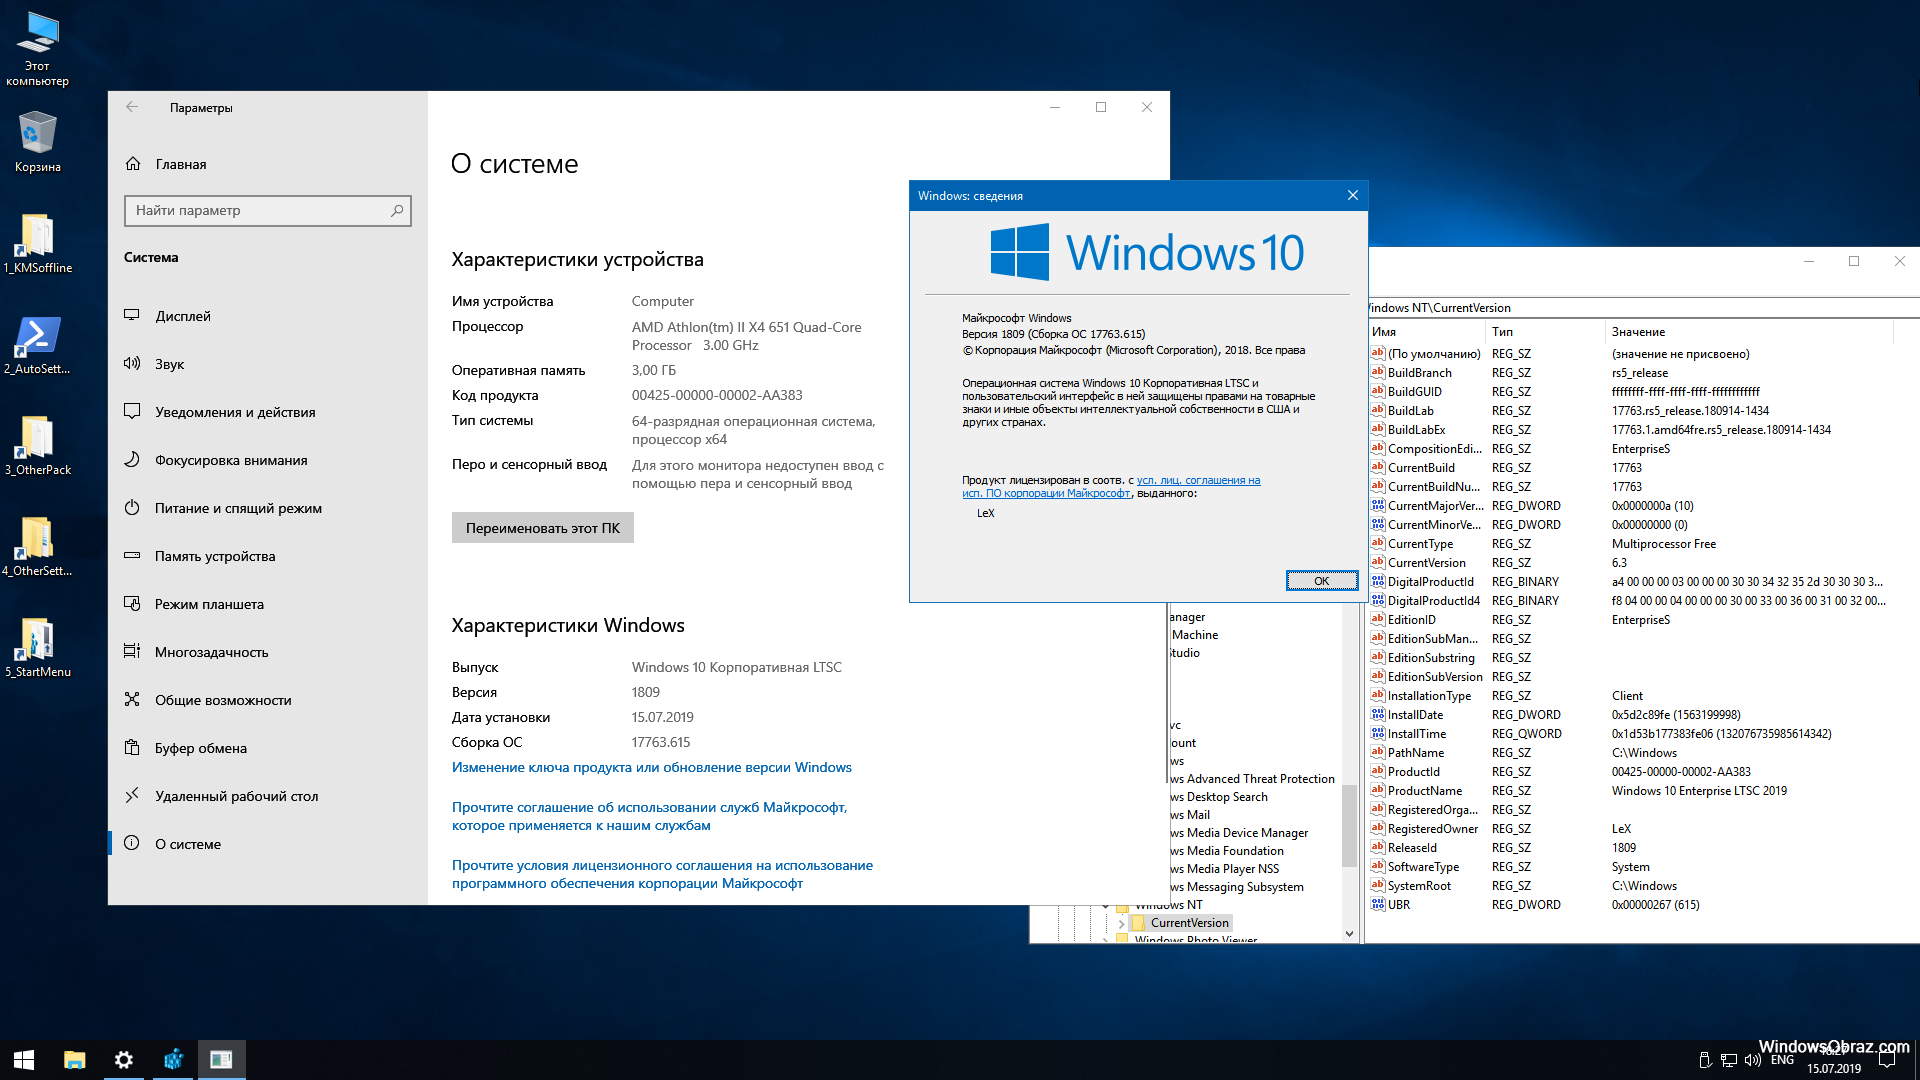 Купить систему windows 10. Windows 10 корпоративная. Виндовс 10 корпоративная LTSC. Windows 10 Enterprise корпоративная) 64 bit. Windows 10 корпоративная LTSC 2019.